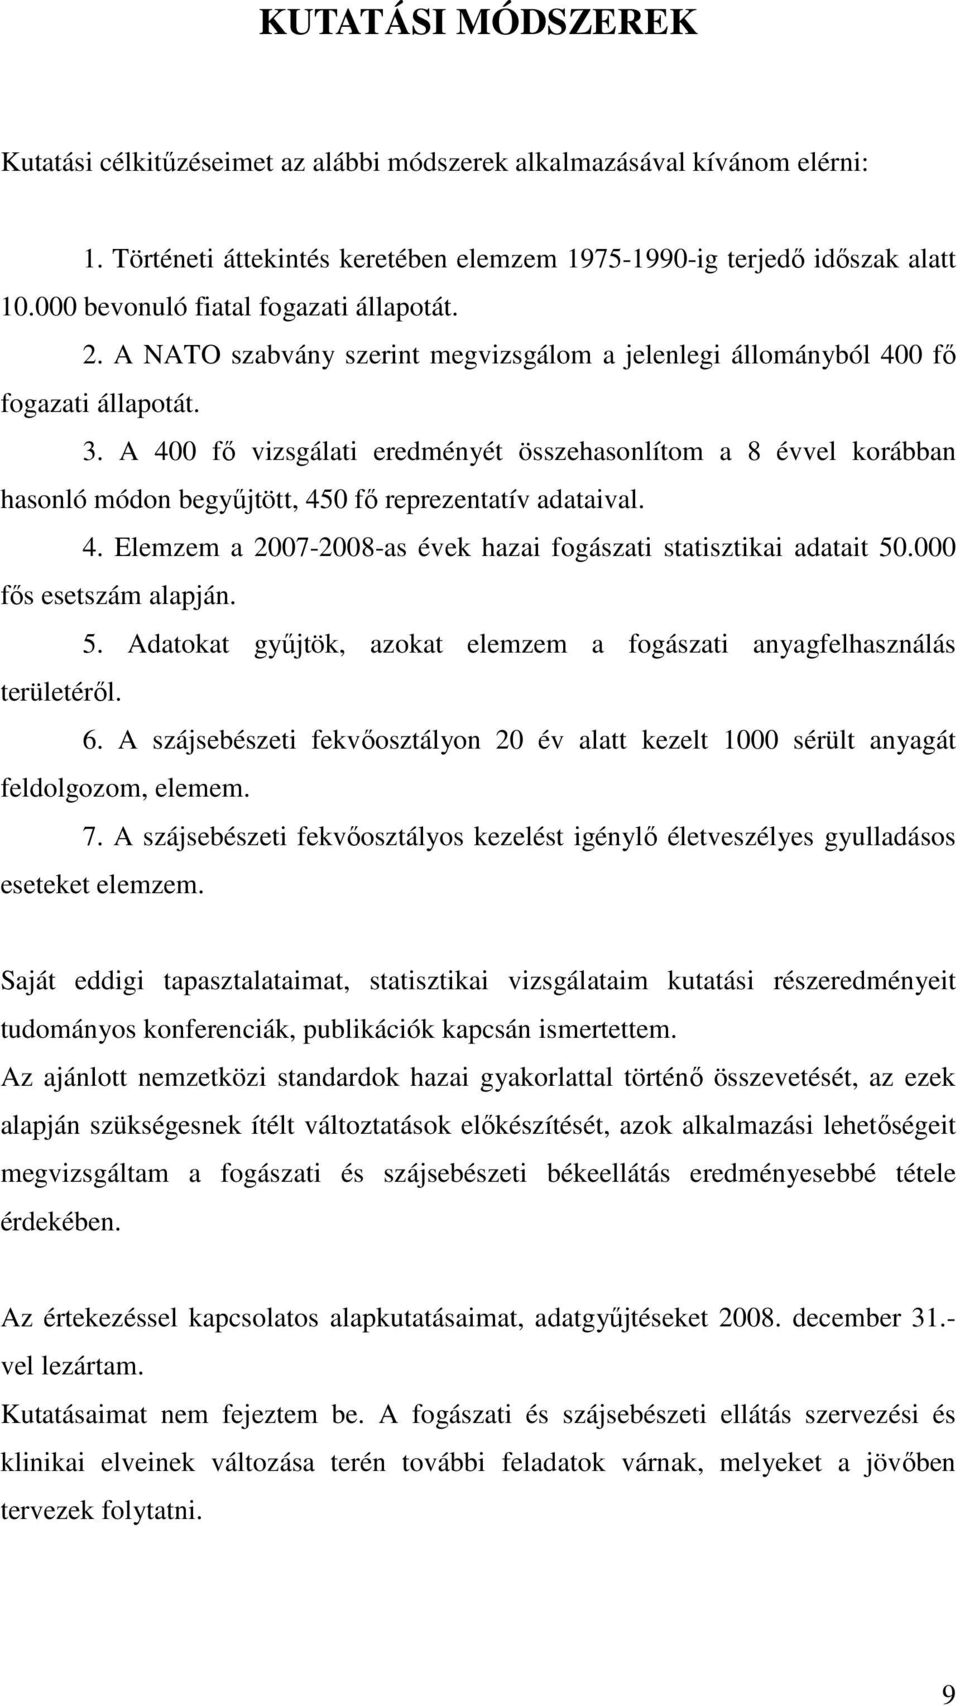 A 400 fı vizsgálati eredményét összehasonlítom a 8 évvel korábban hasonló módon begyőjtött, 450 fı reprezentatív adataival. 4. Elemzem a 2007-2008-as évek hazai fogászati statisztikai adatait 50.